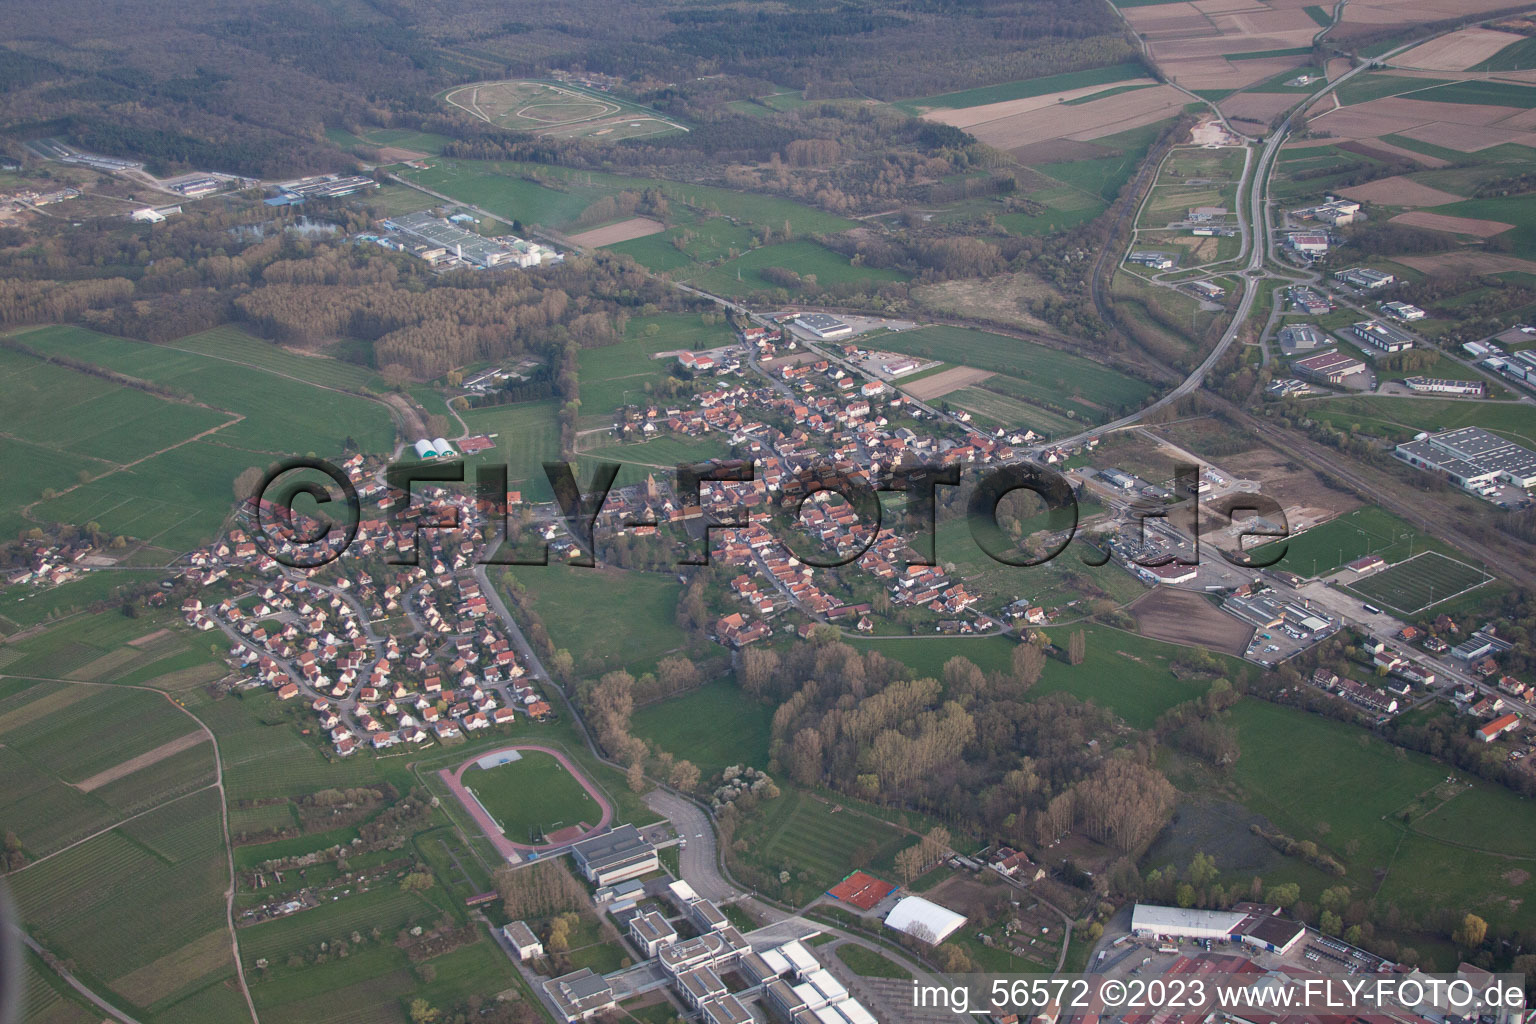 Altenstadt im Bundesland Bas-Rhin, Frankreich aus der Luft betrachtet